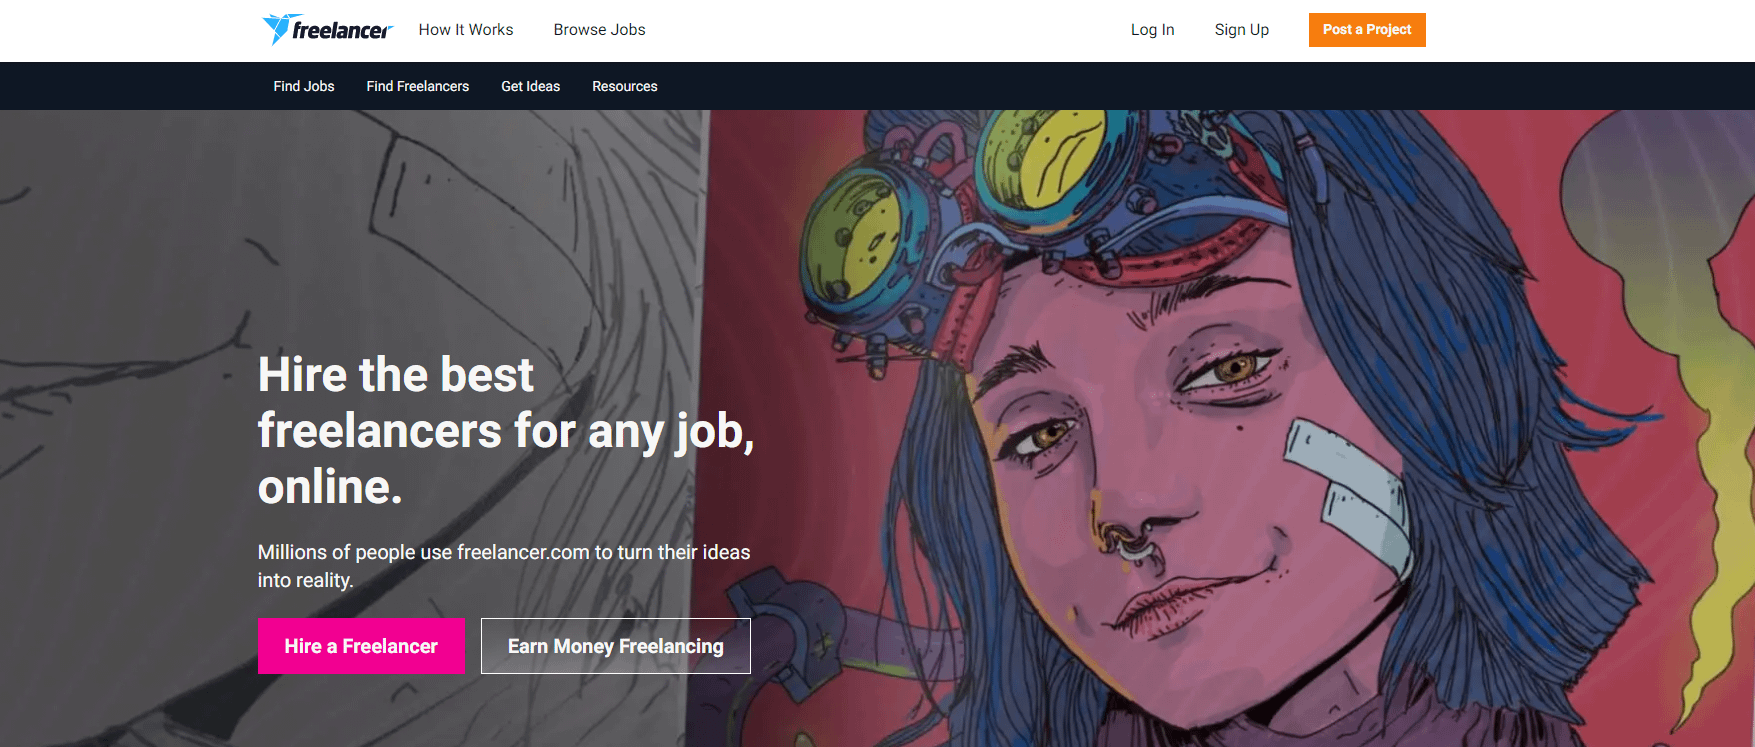 The Freelancer.com home page.